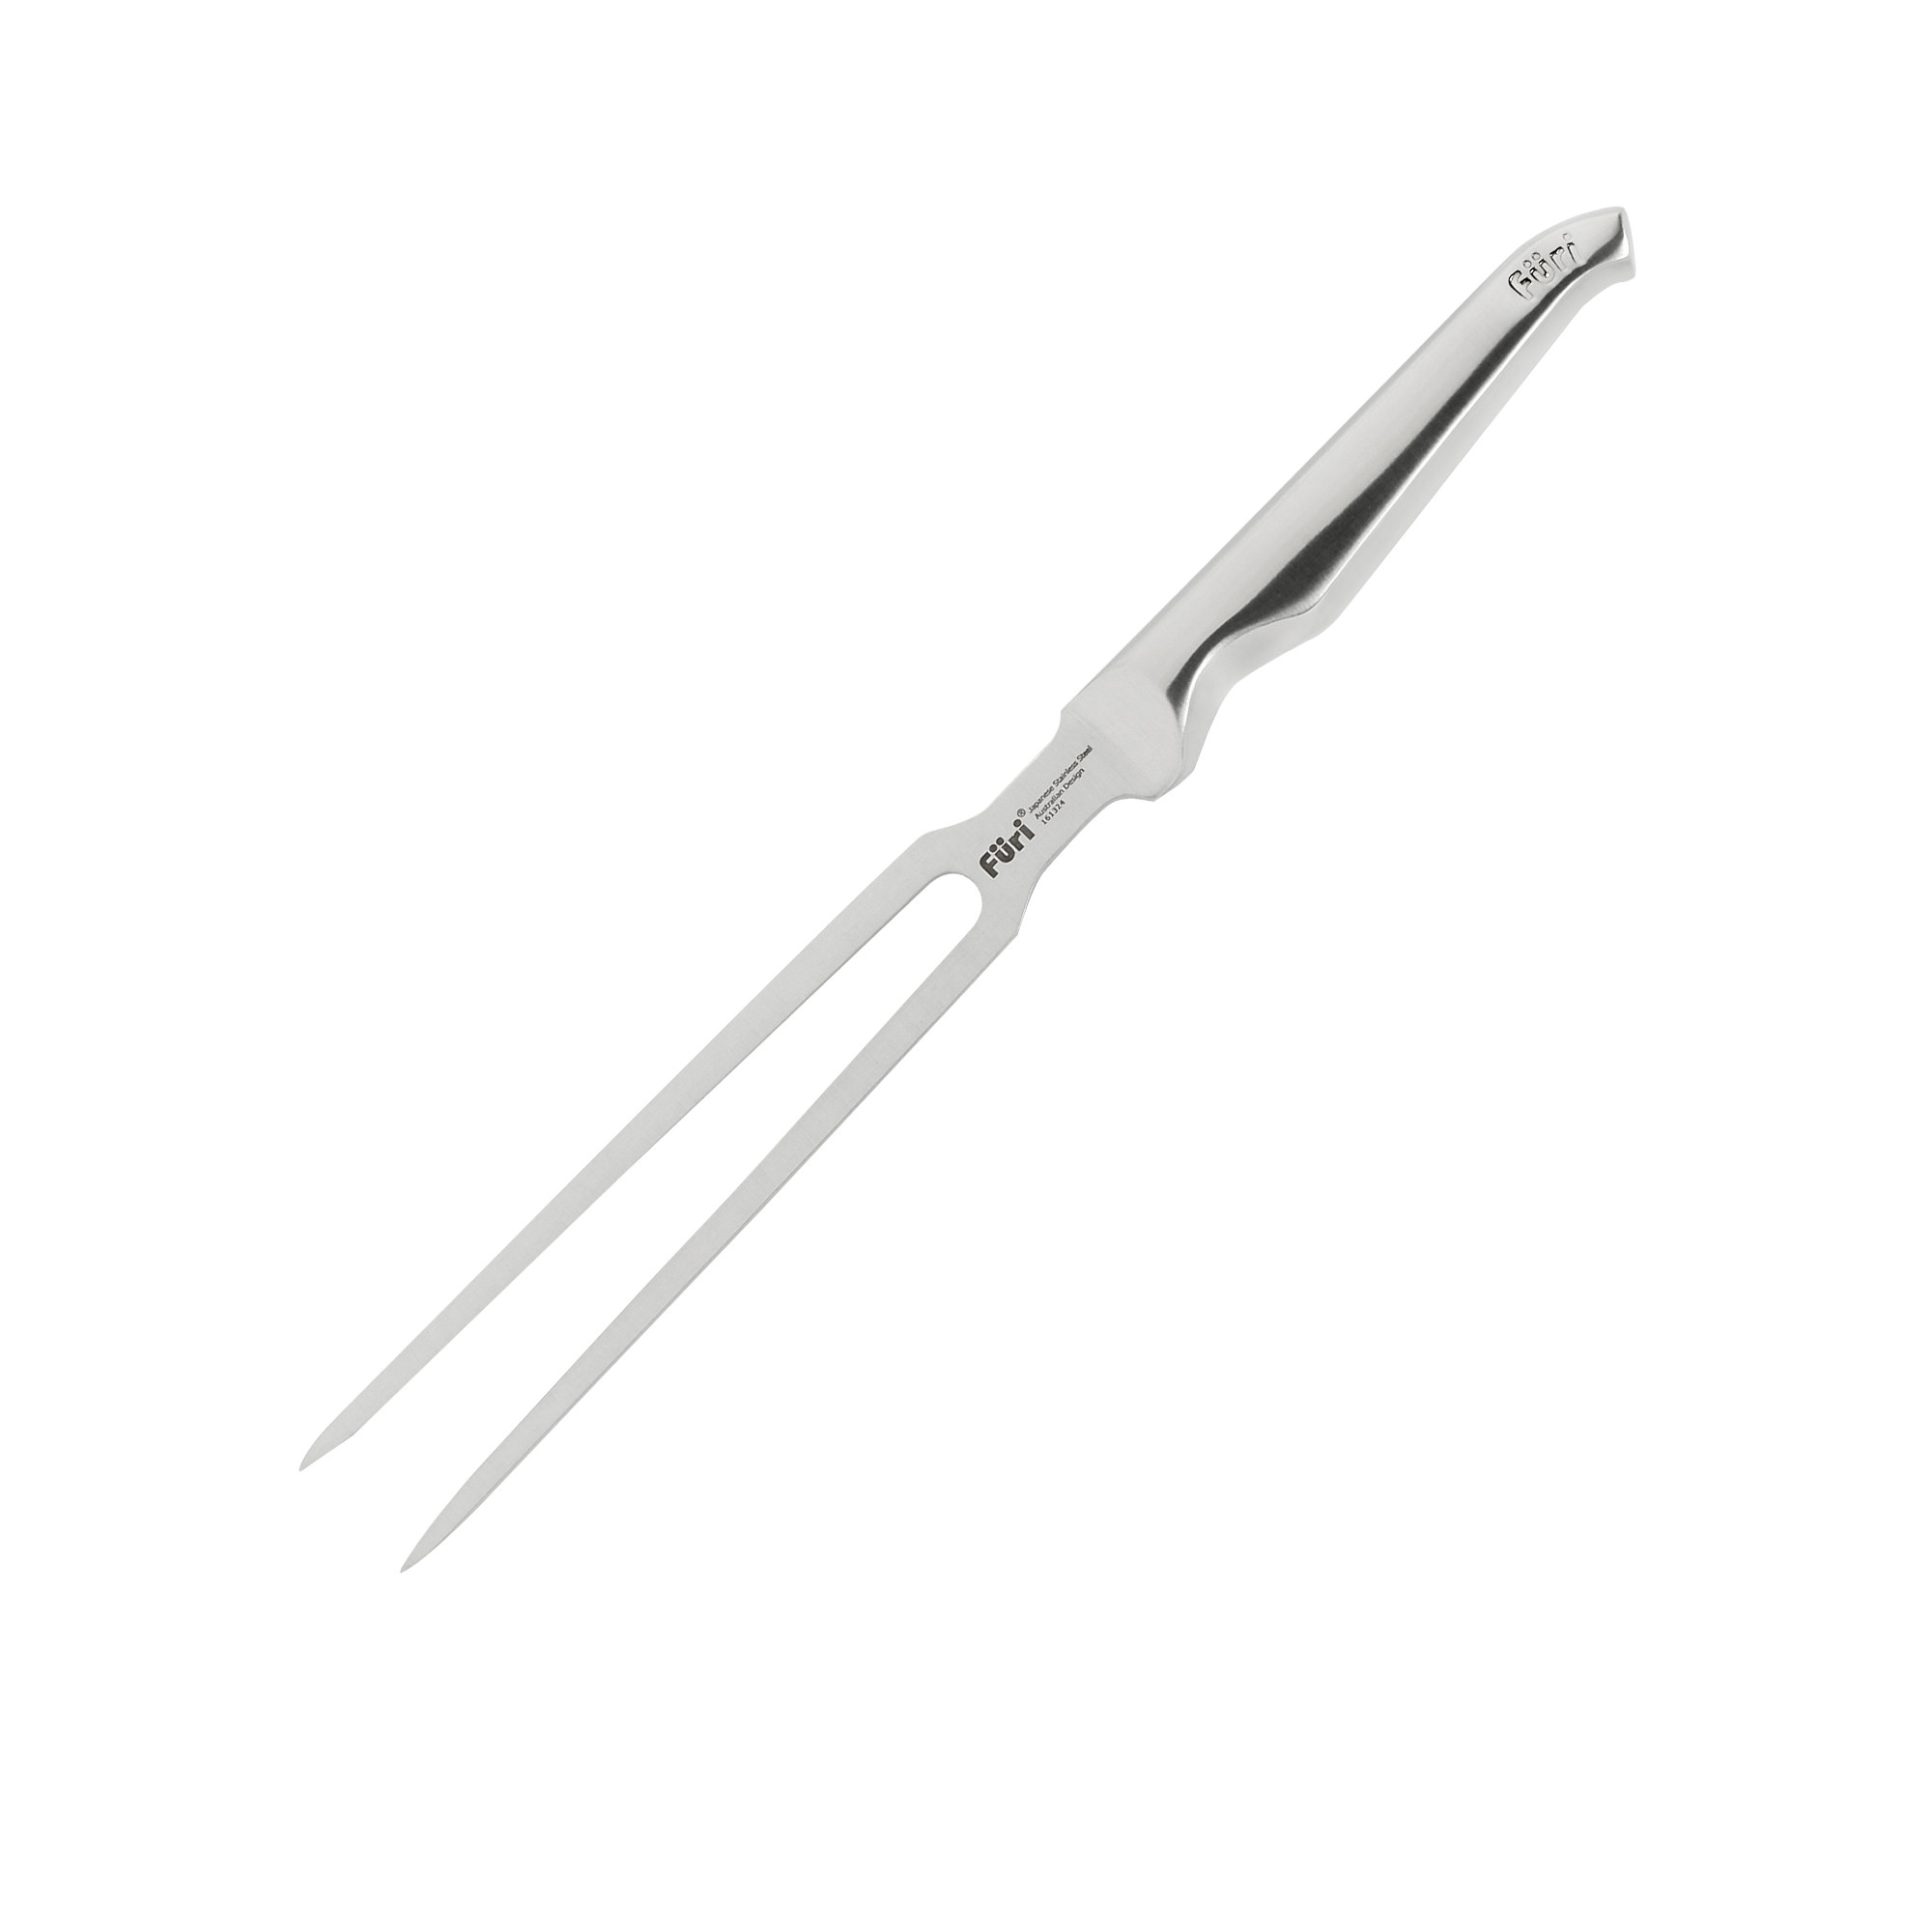 Furi Pro Carving Fork 18cm Image 1